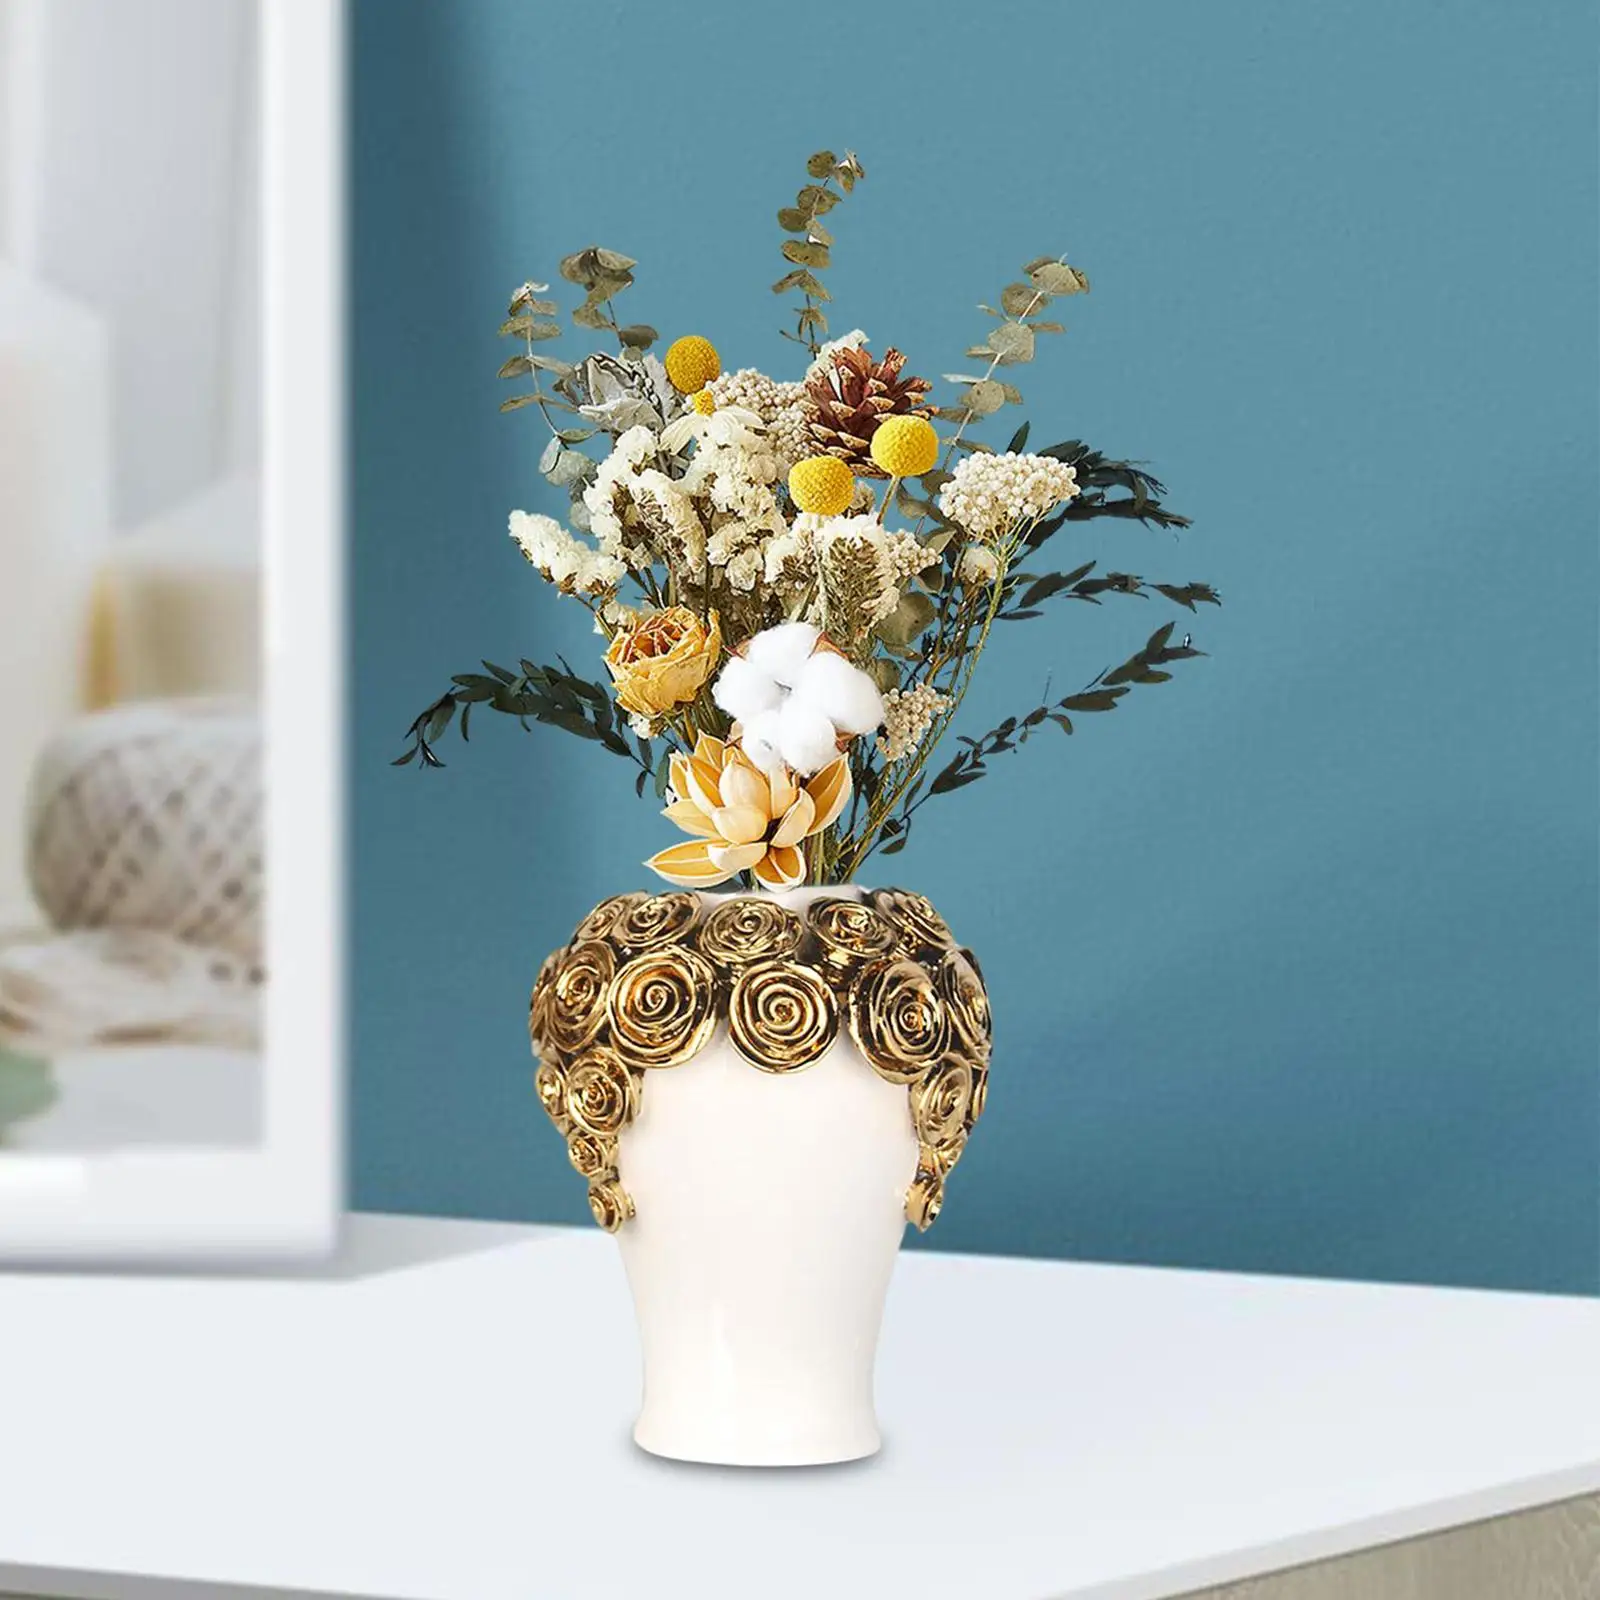 Ceramic Flower Vase Decorative Vases Porcelain Ginger Jar Temple Jar with Lid for Home Wedding Party Fireplace Bedroom Decor